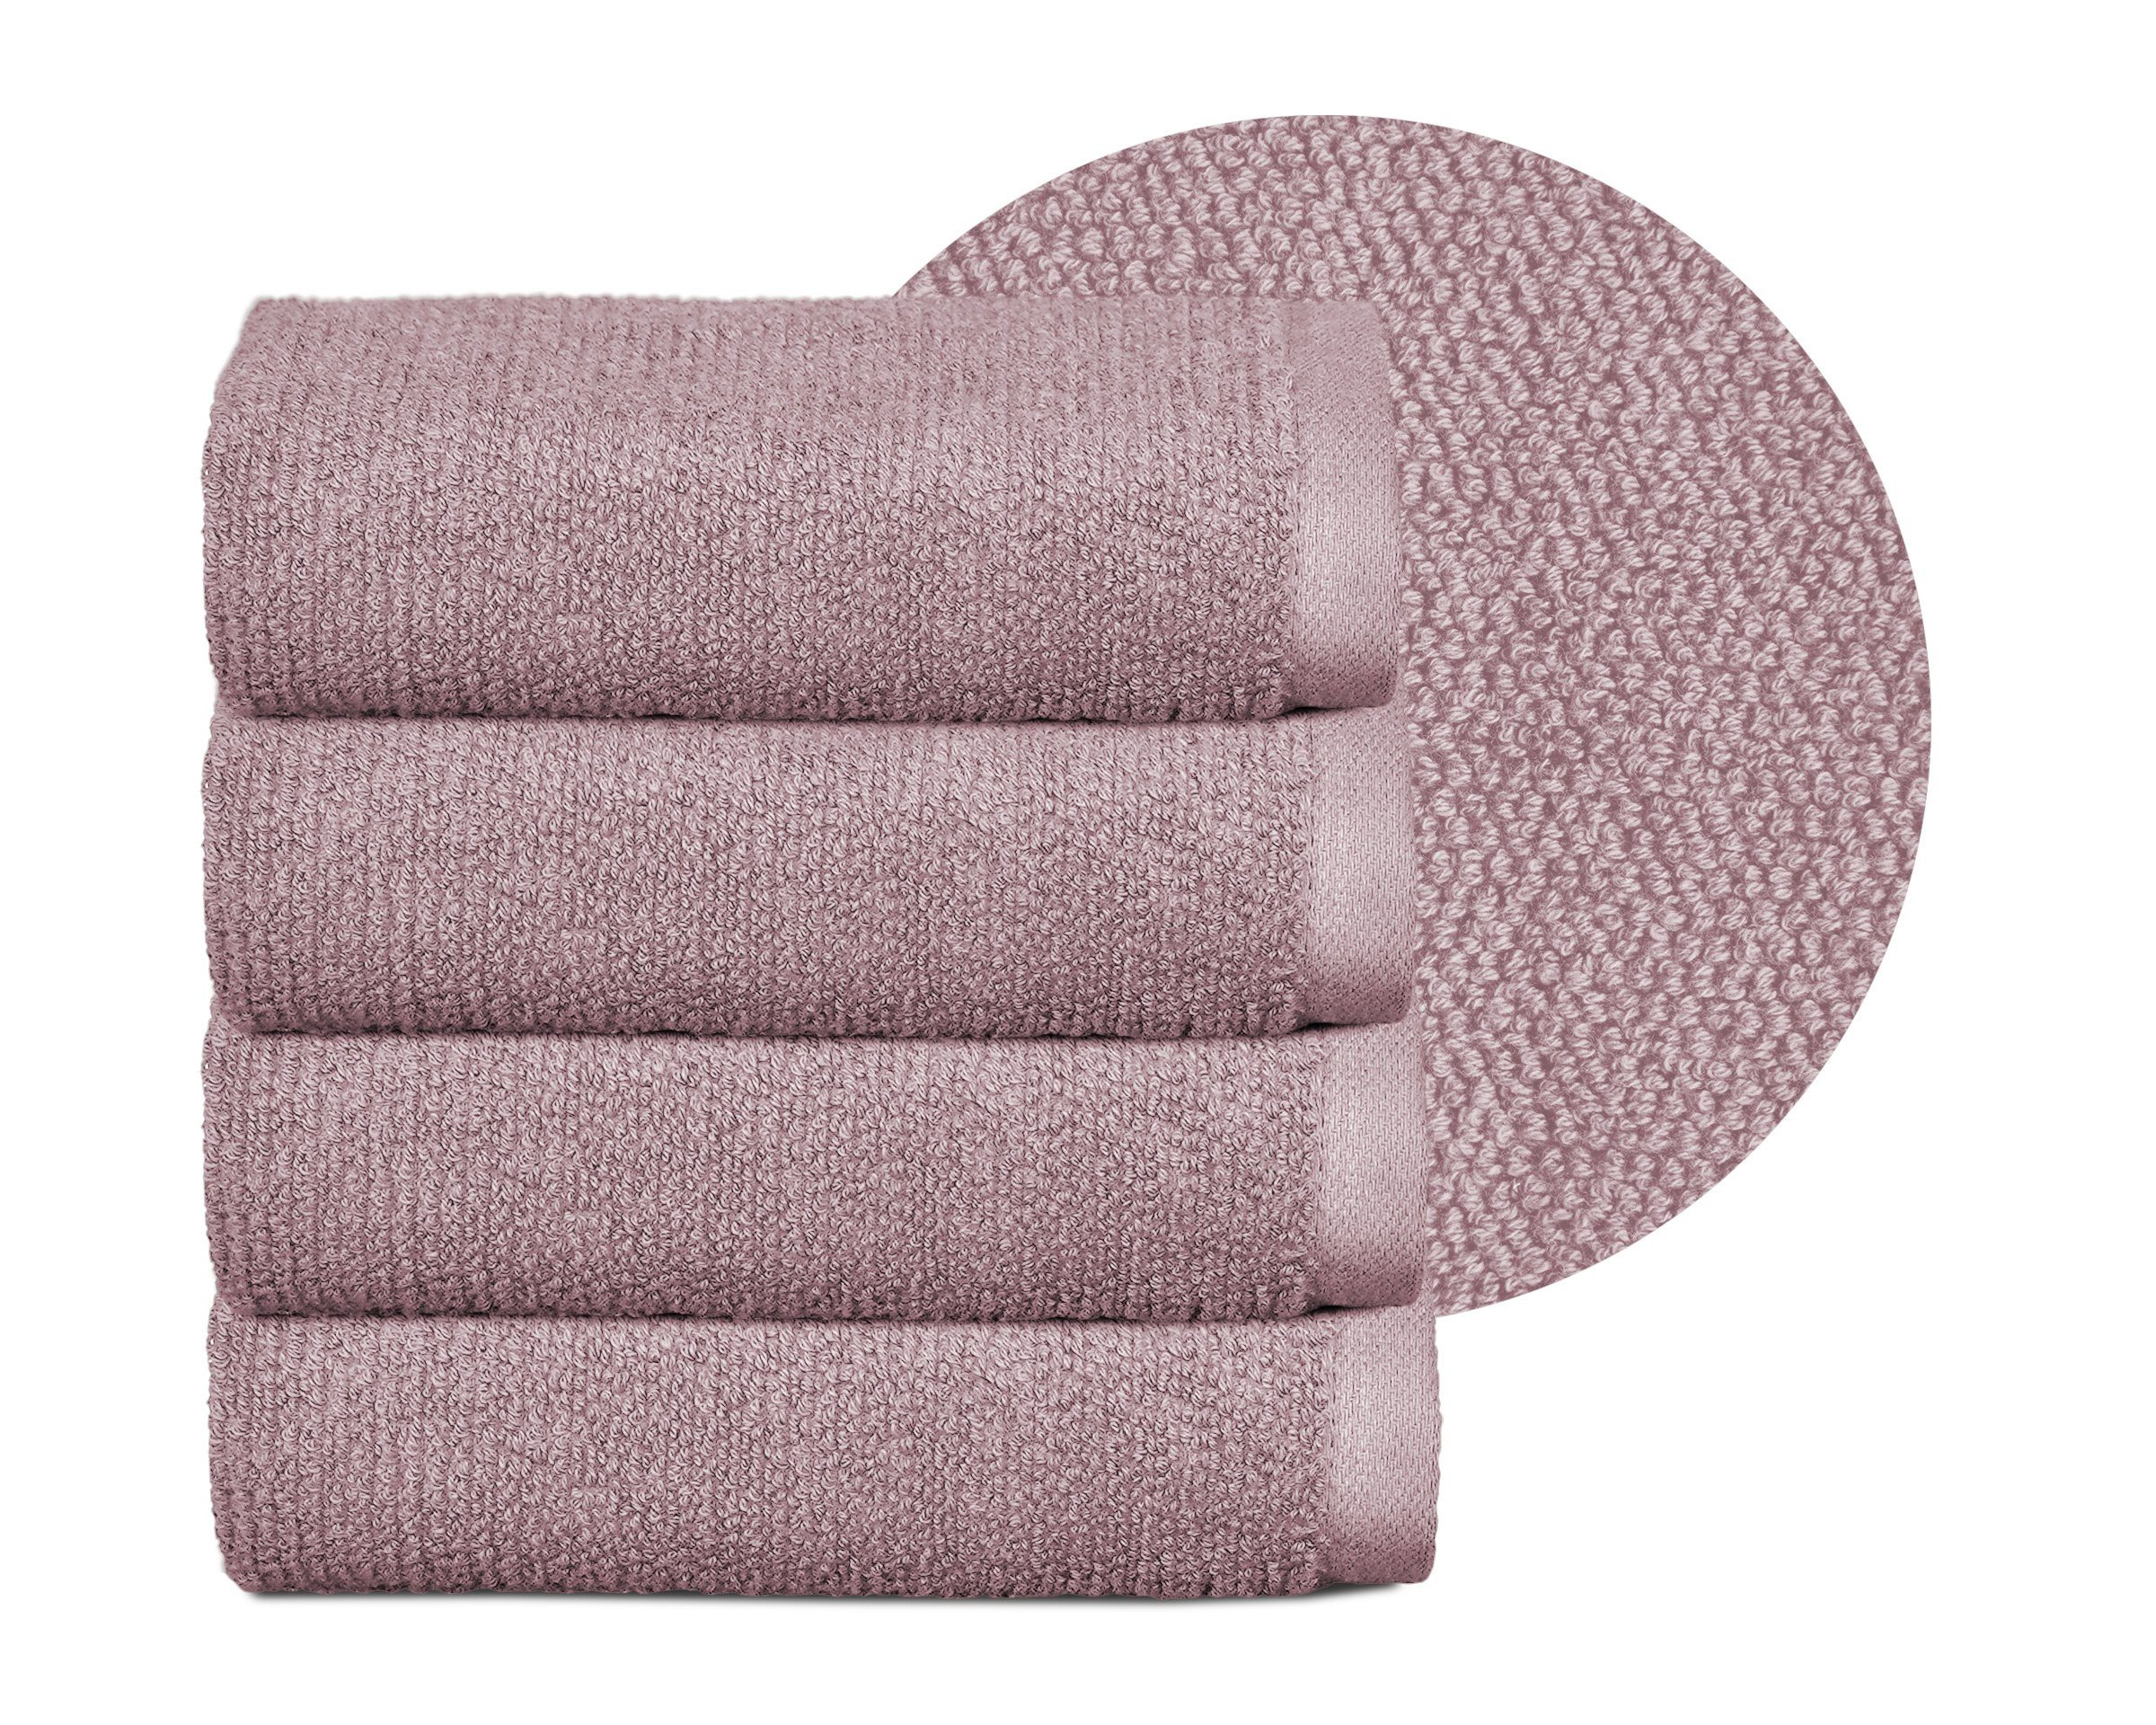 Beautex Handtuch Set Handtuch Set, Made in Europe, Frottier, (Multischlaufen-Optik, Frottier Premium Set aus 100% Baumwolle 550g/m) Altrosa